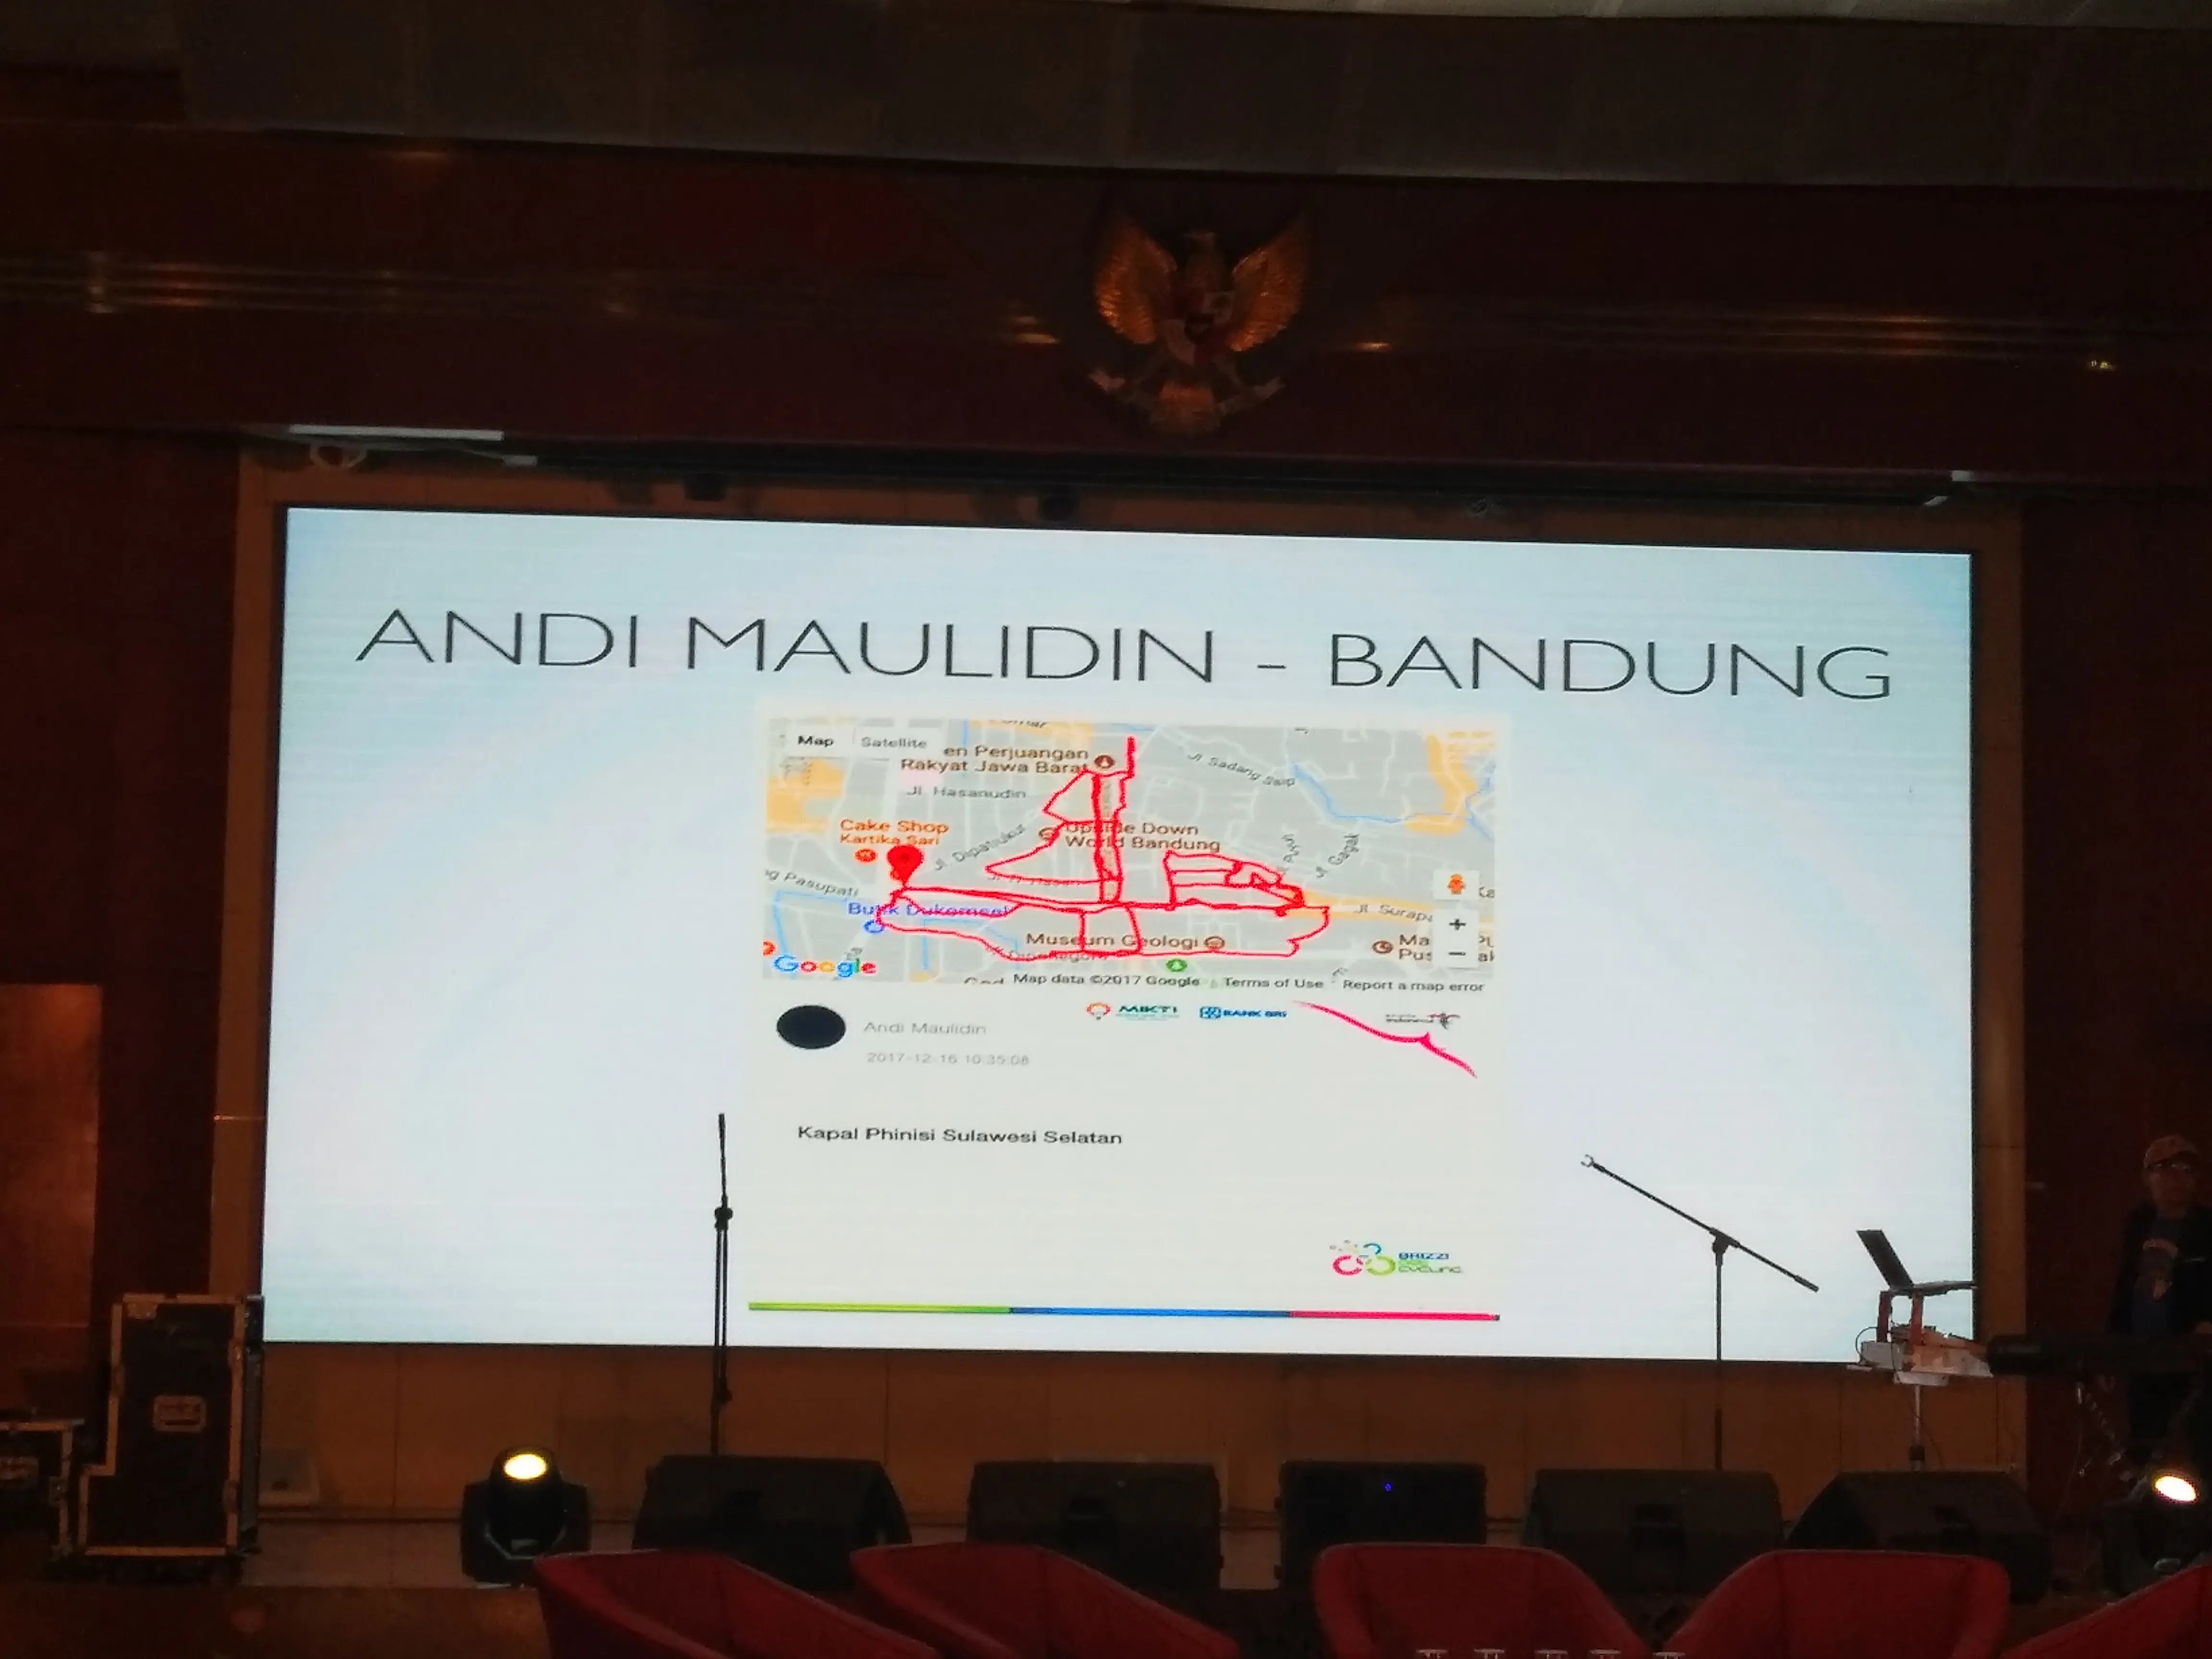 Peserta asal Bandung, Andi Maulidin, menjadi pemenang BRIZZI Artcycling setelah menempuh rute yang membentuk kapal Phinisi. (kemenpar)